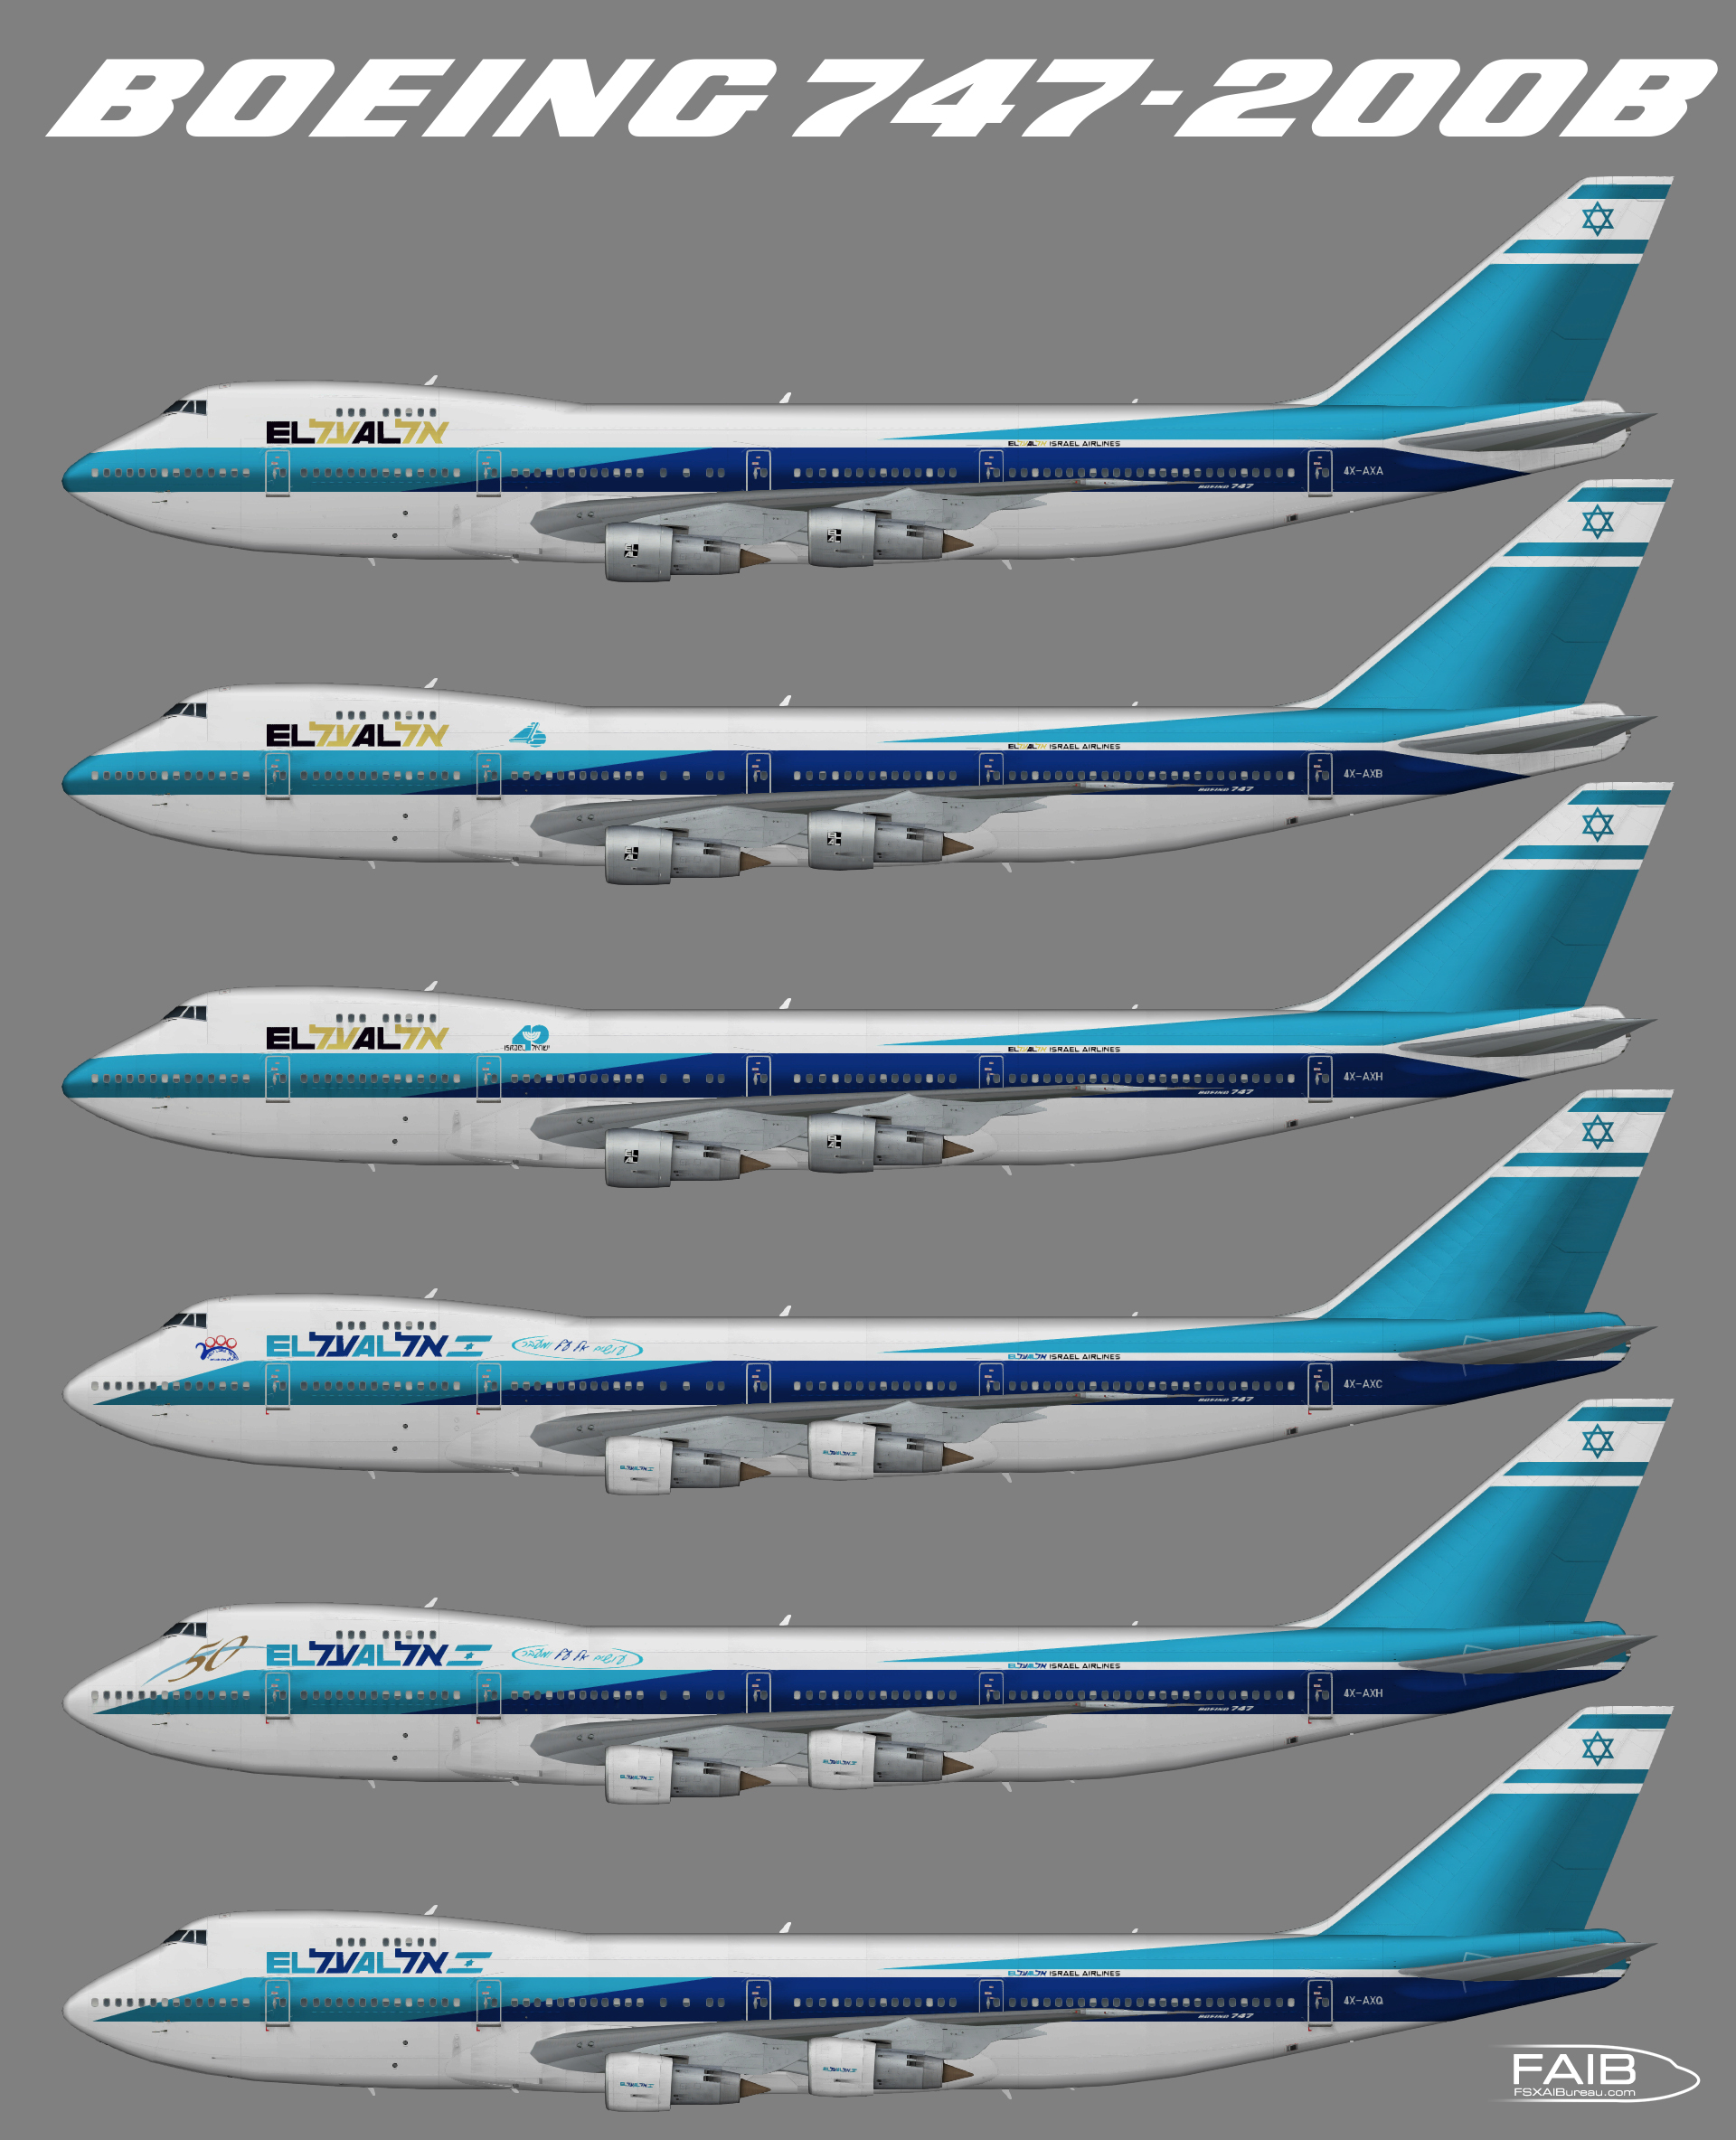 El Al Airlines Boeing 747-200B